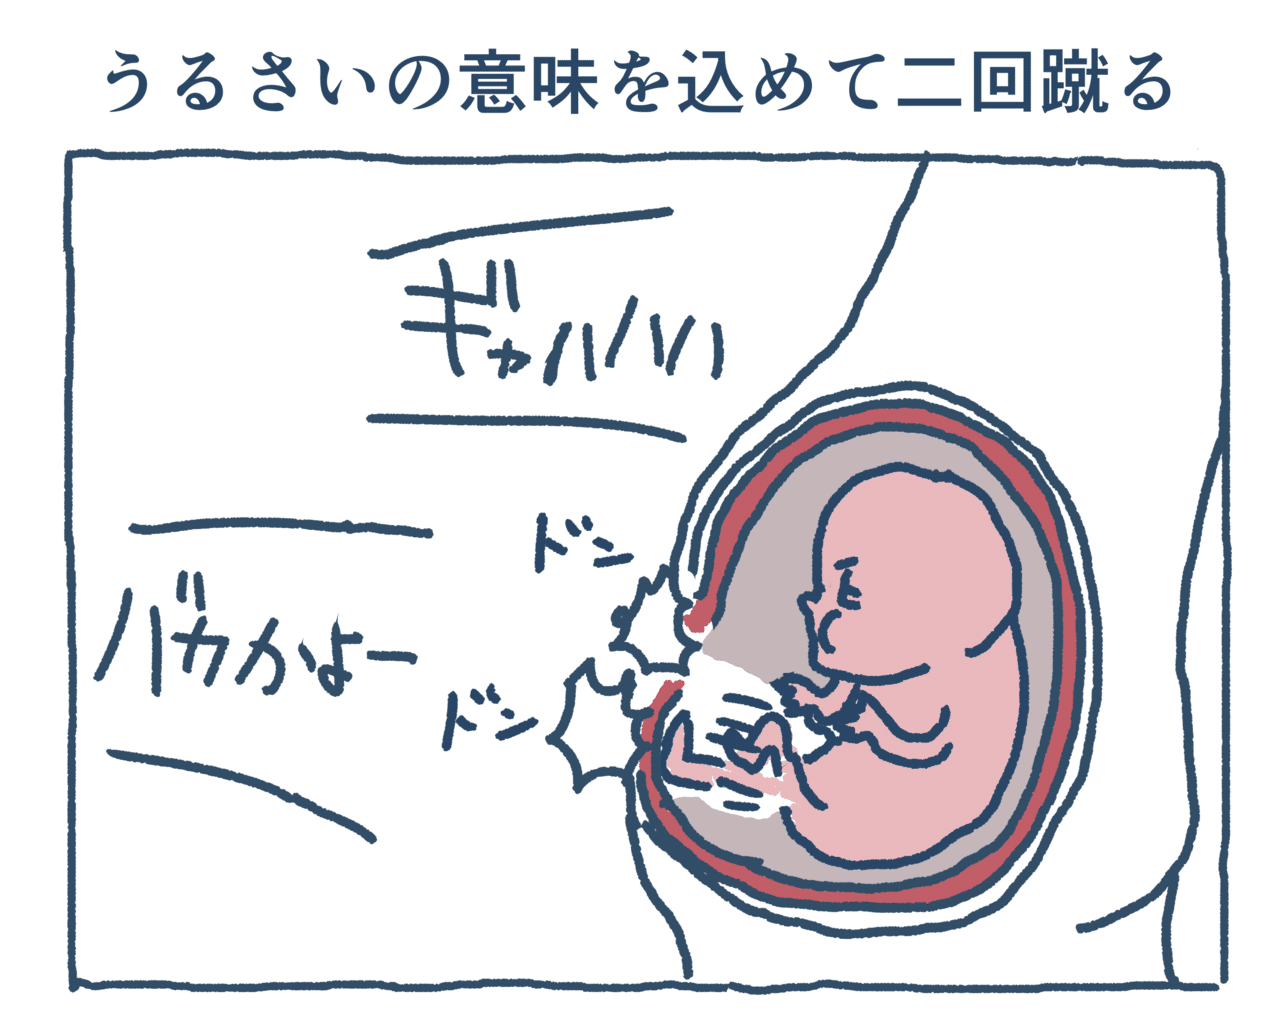 4 10 4 18 1コマ漫画集 リベンセイ 利便性 Note